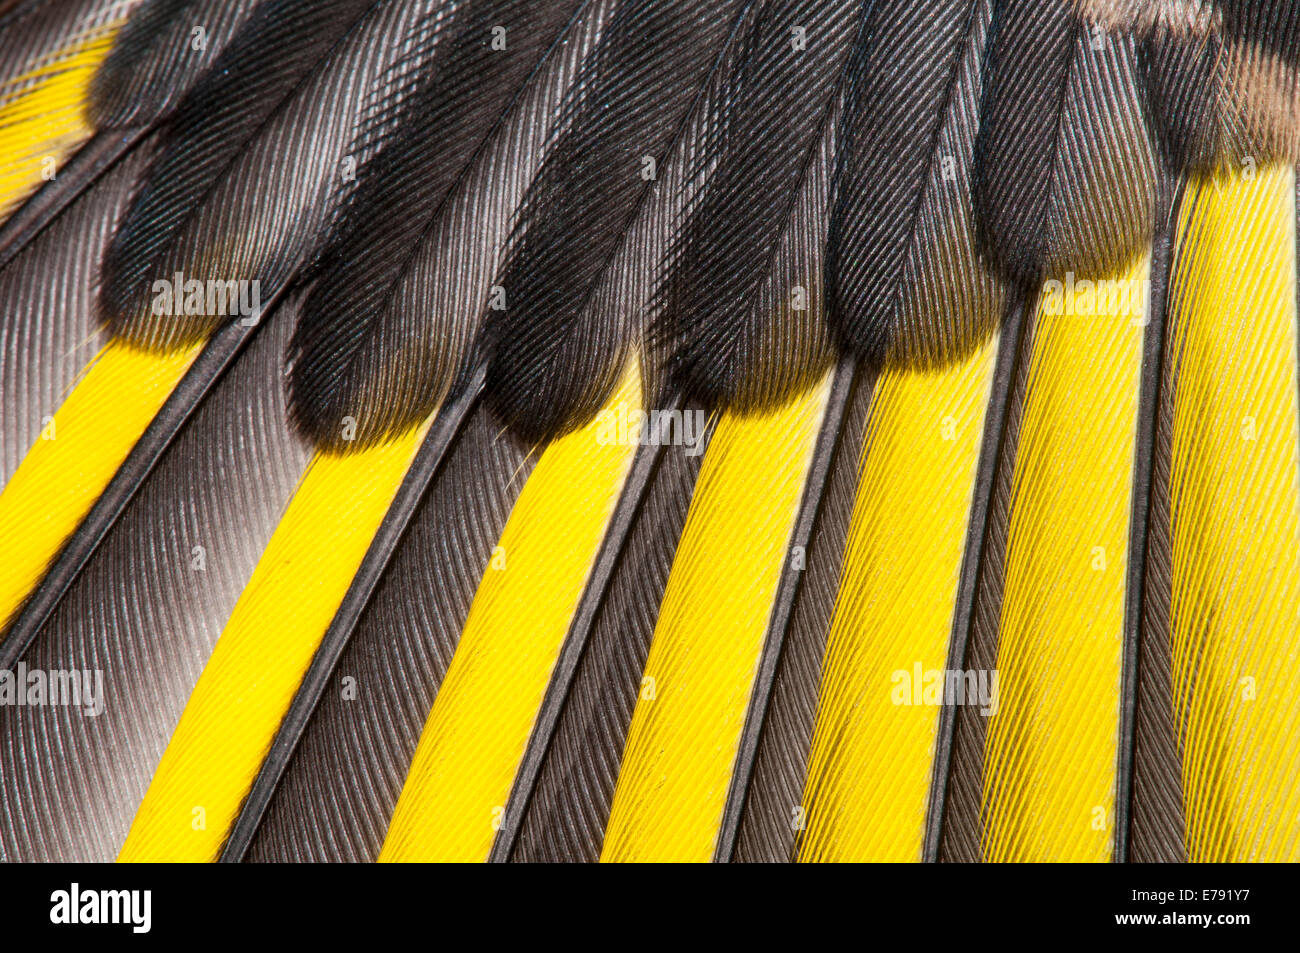 Cardellino (Carduelis carduelis), capretti, close-up dettaglio dell'ala mostra primarie (con giallo) e secondari (tutti blac Foto Stock